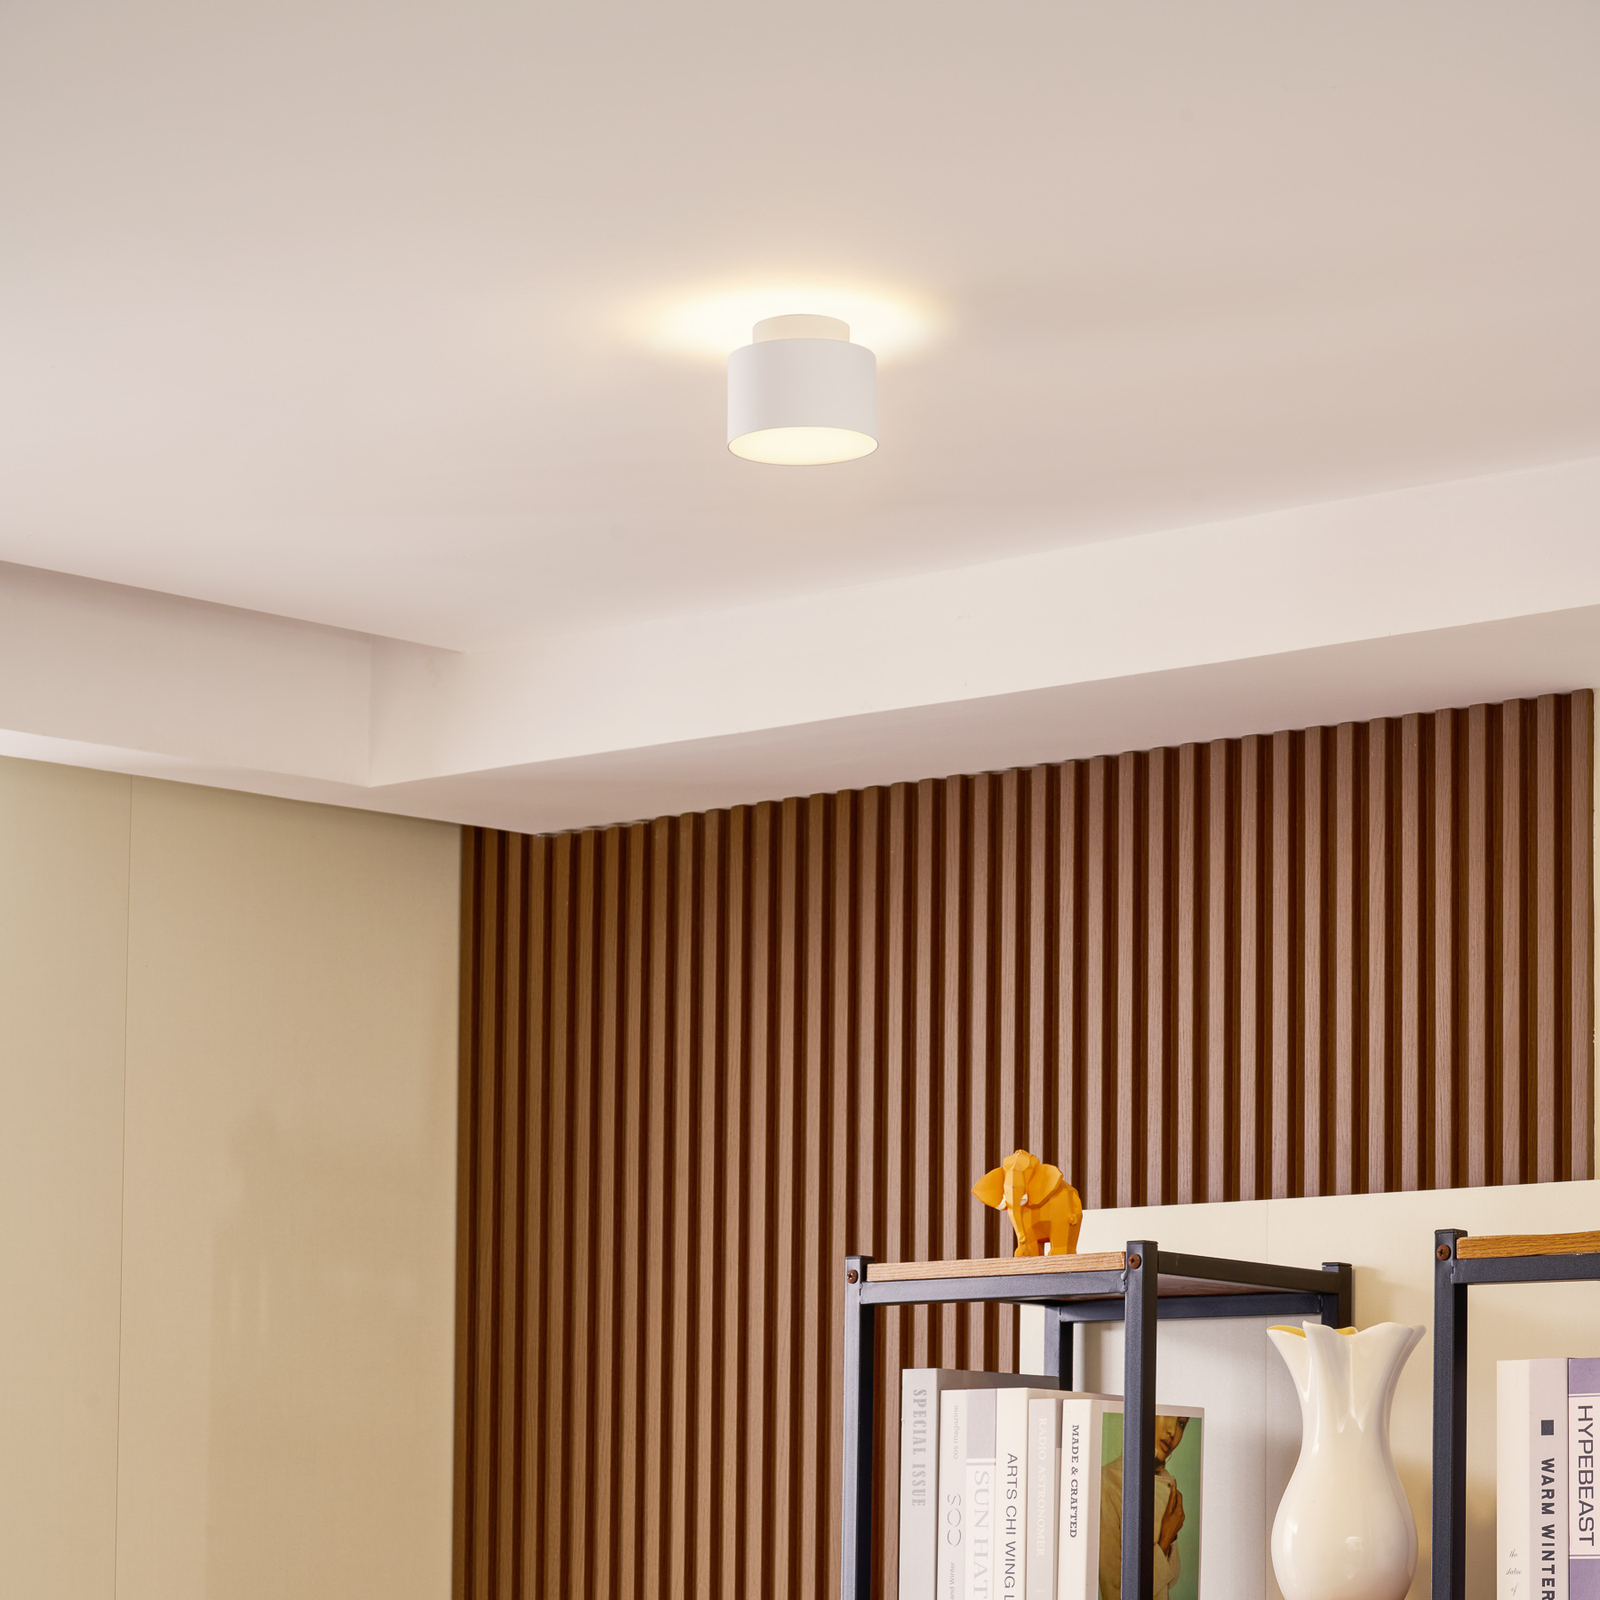 Lindby LED-spotlight Nivoria, Ø 11 cm, sandhvitt